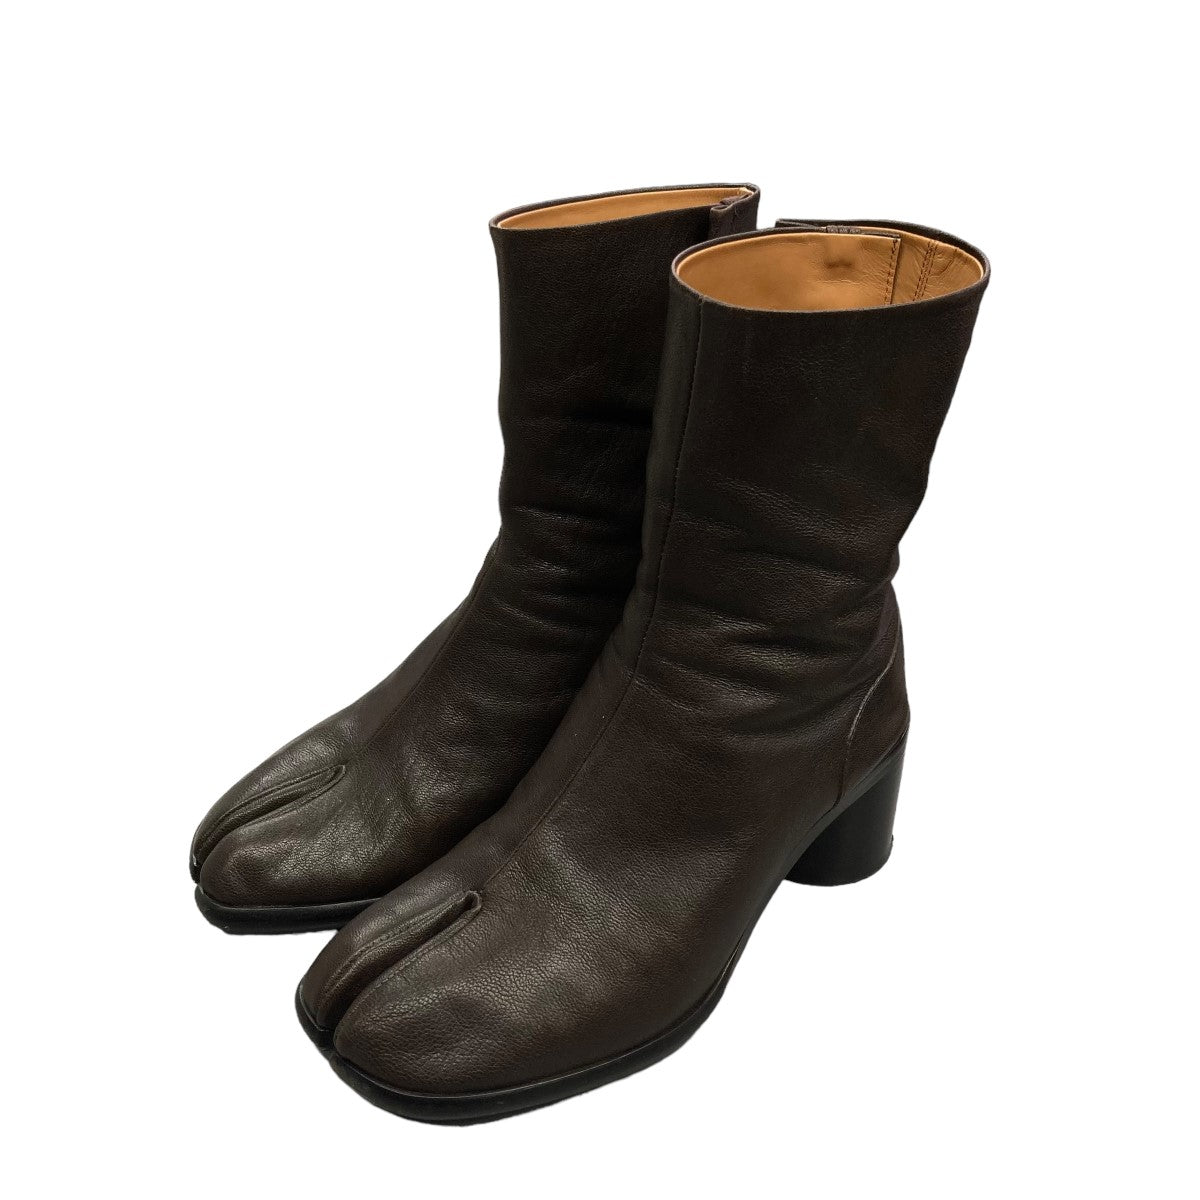 Maison Margiela(メゾン マルジェラ) 足袋ブーツ S39WU0202 ブラウン 